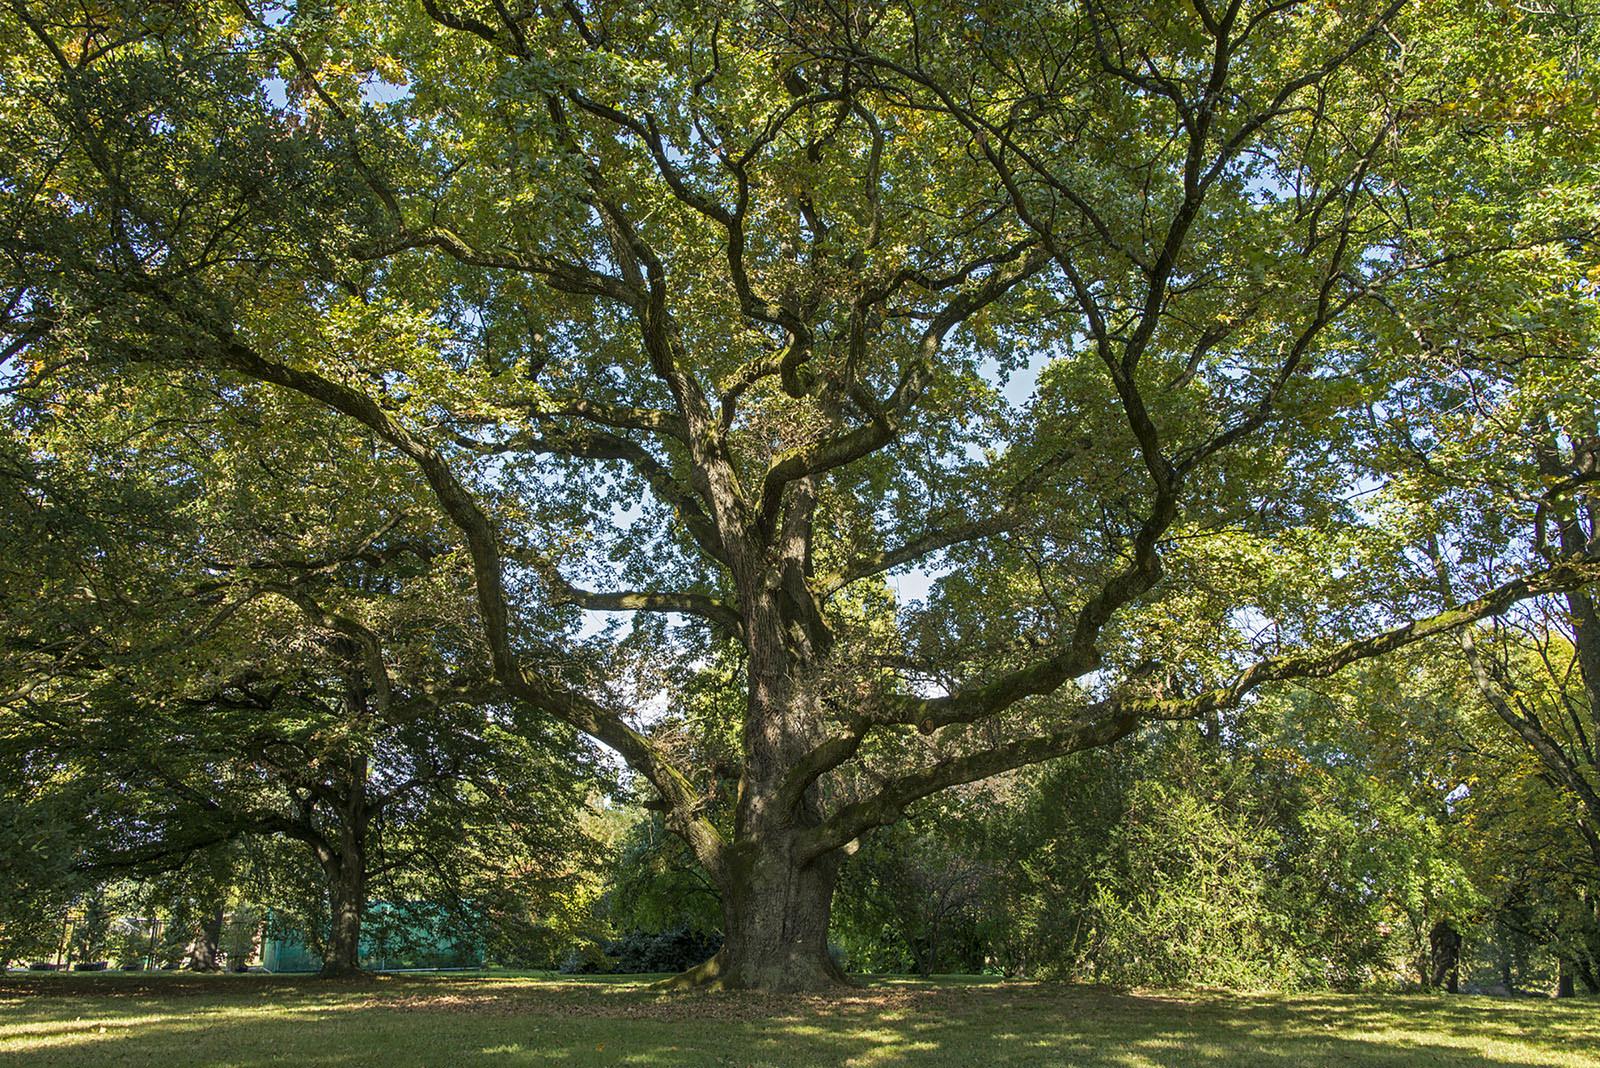 Le "Vénérable Vieux Chêne Pédonculé" [Quercus robur] des Conservatoire et Jardin botaniques de Genève a été planté en 1719, bien avant la création de ce jardin. Considéré comme une "œuvre vivante", il est le doyen du musée, du haut de ses plus de trois siècles (hauteur: 25 mètres – diamètre: 2,16 mètres). [CJBG/mirabilia.ch]